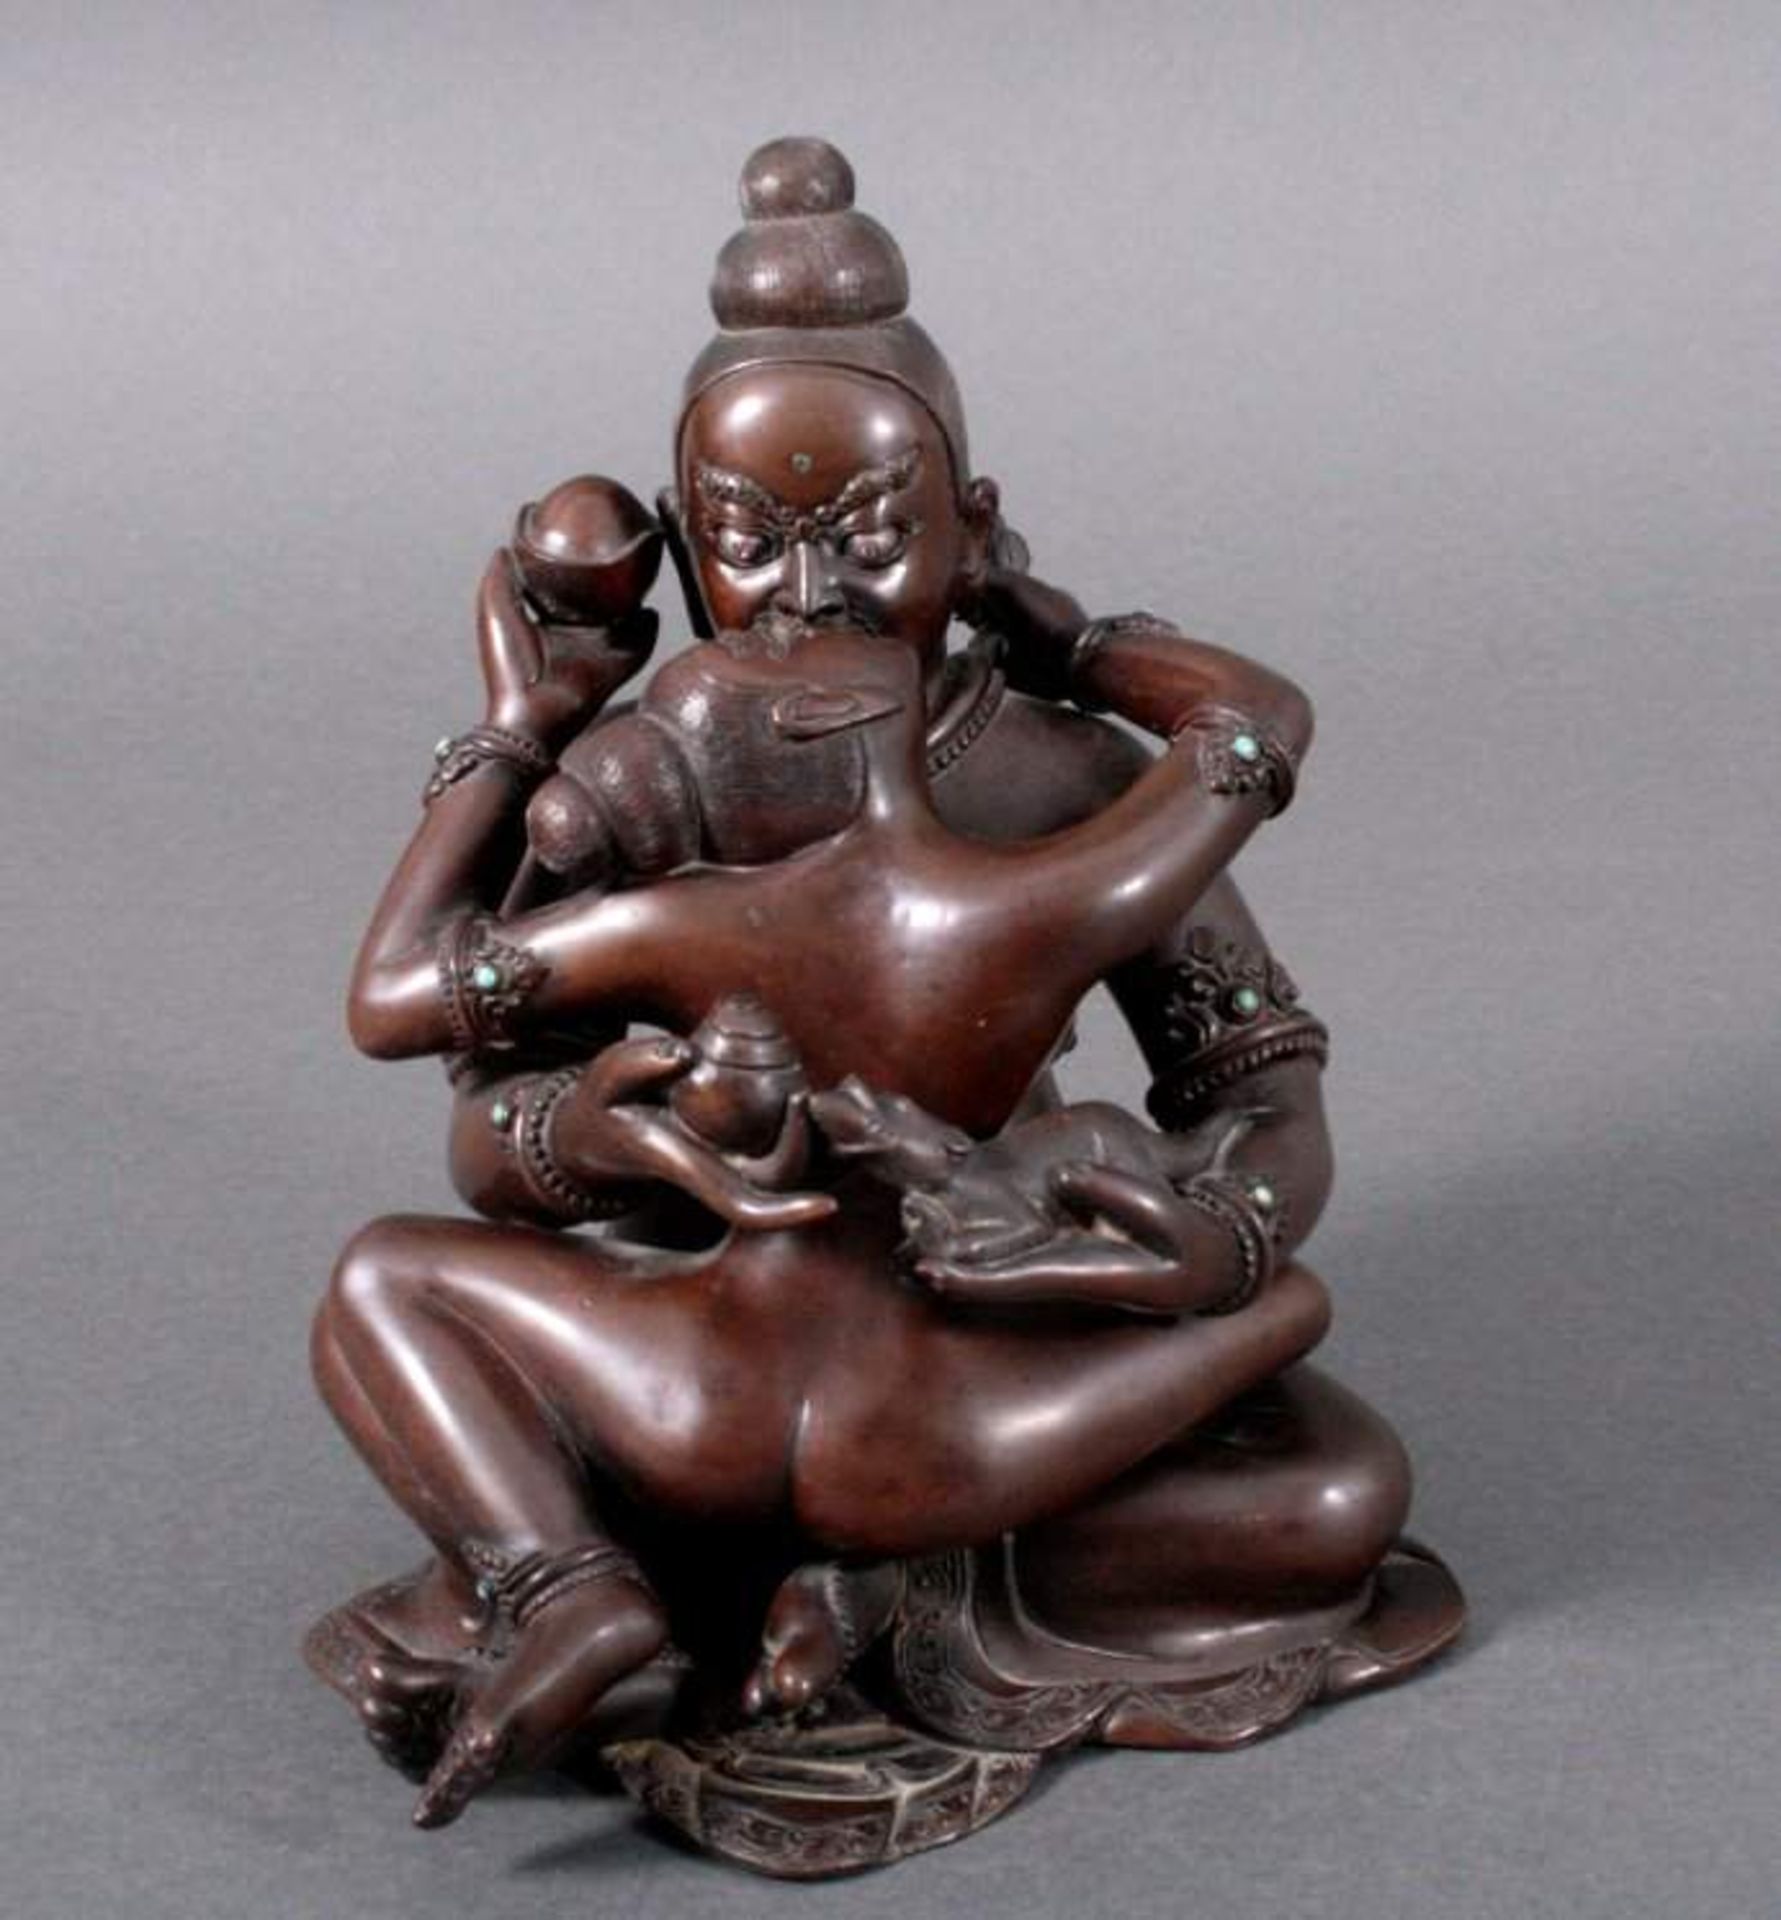 Bronzeskulptur, Indien2-teilige Skulptur, Vereinigung von Ying und Yang, dunklePatina, besetzt mit